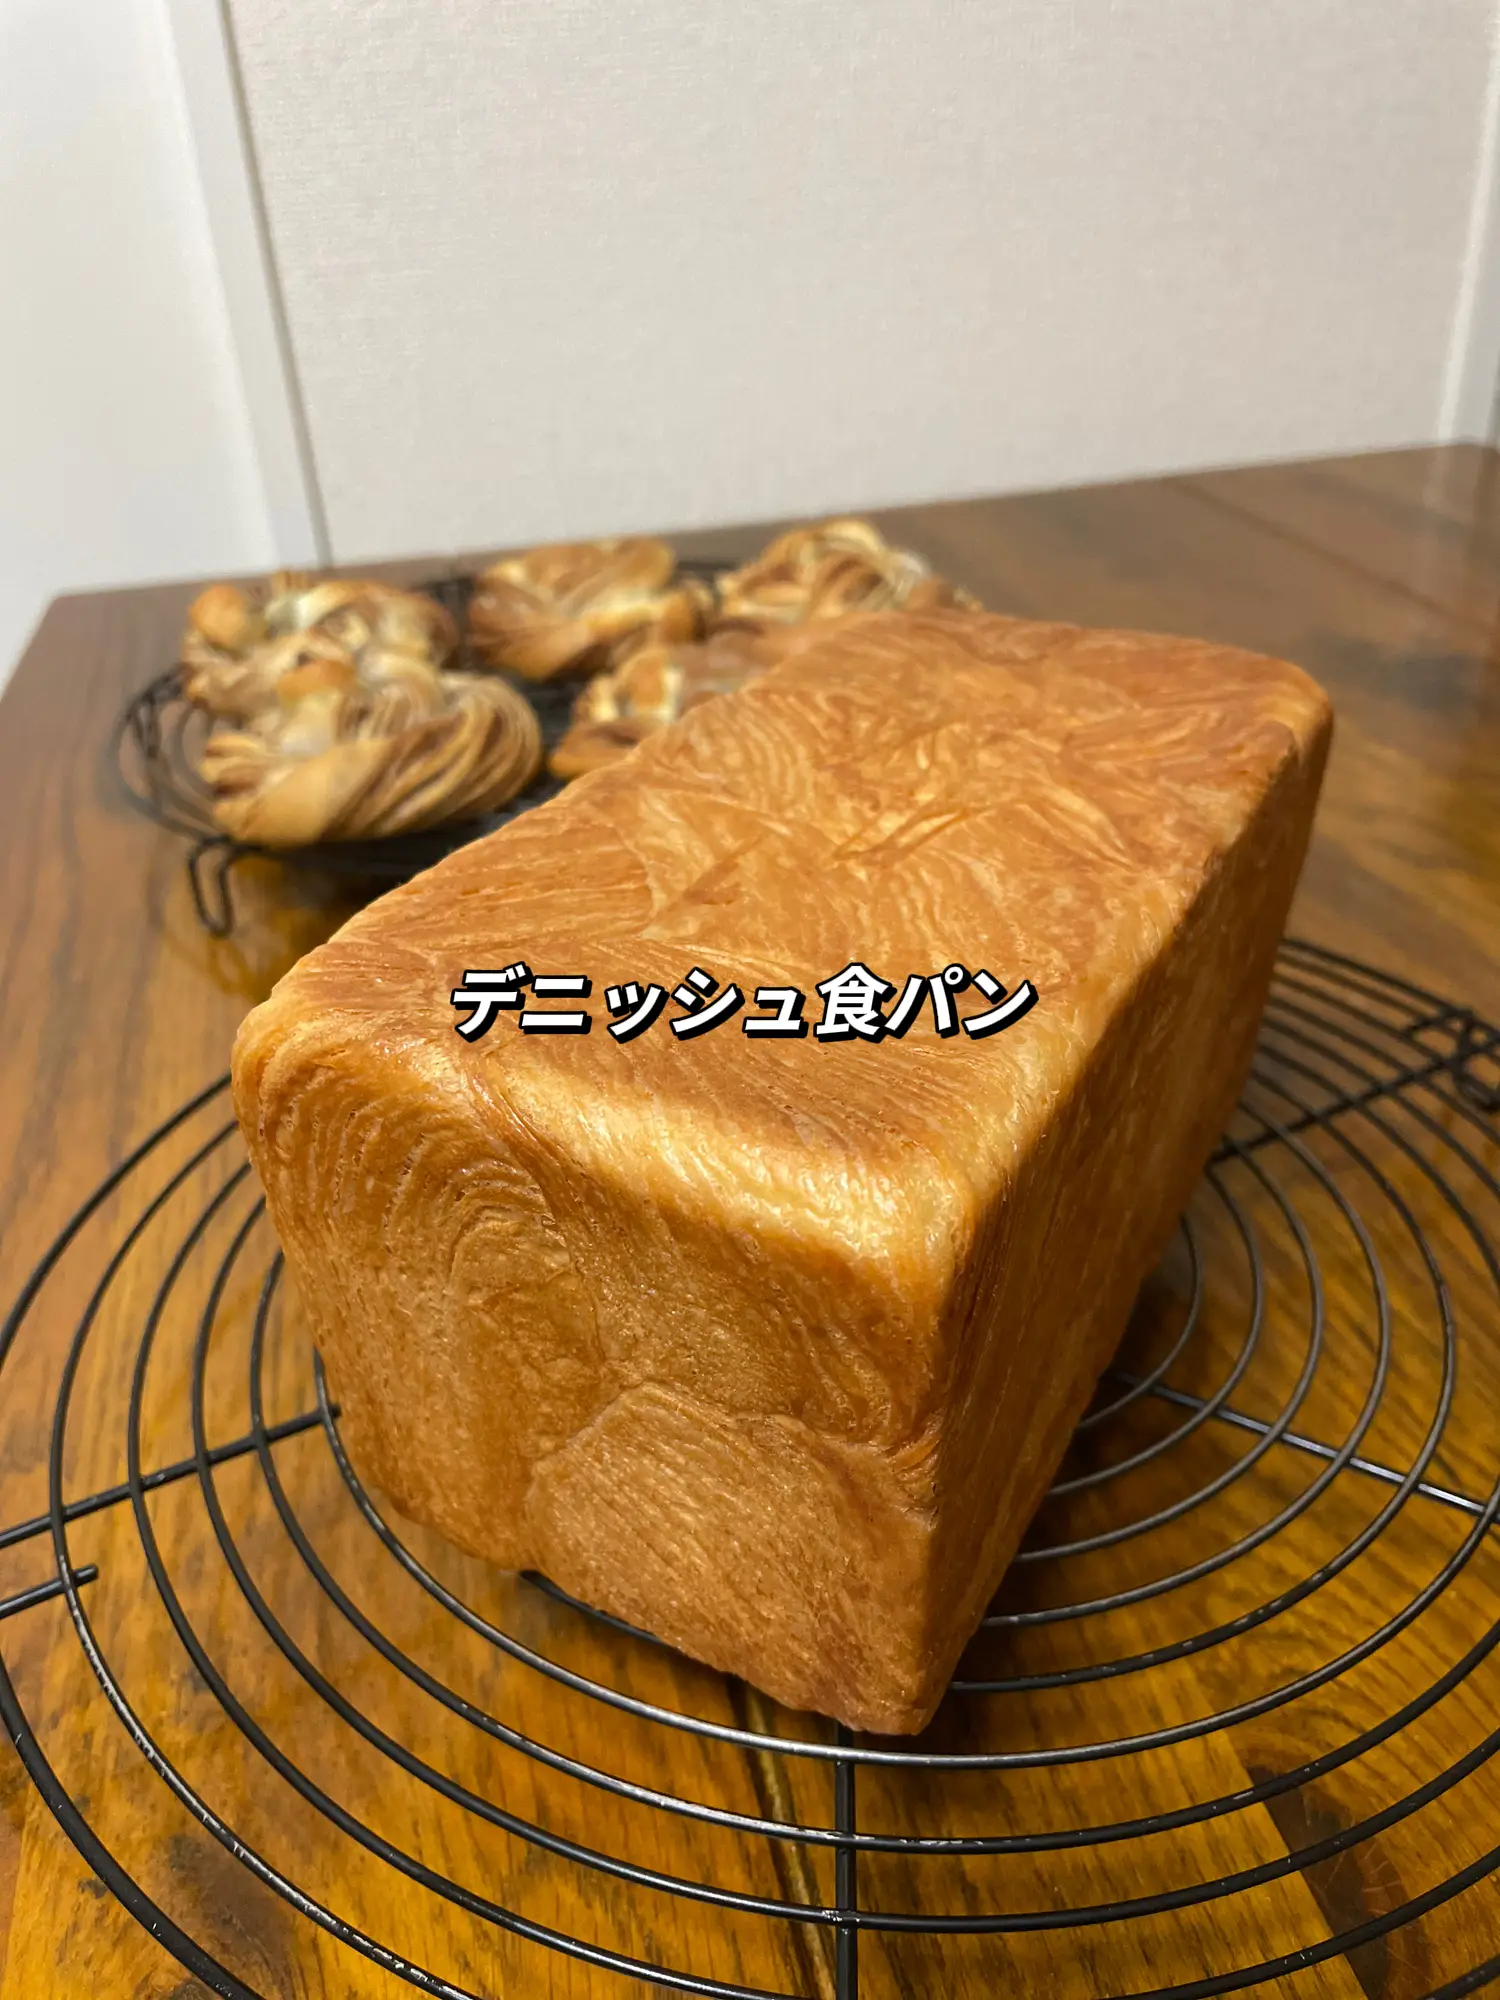 デニッシュ #デニッシュ食パン #パン作り #大阪パン教室 | グラマラス